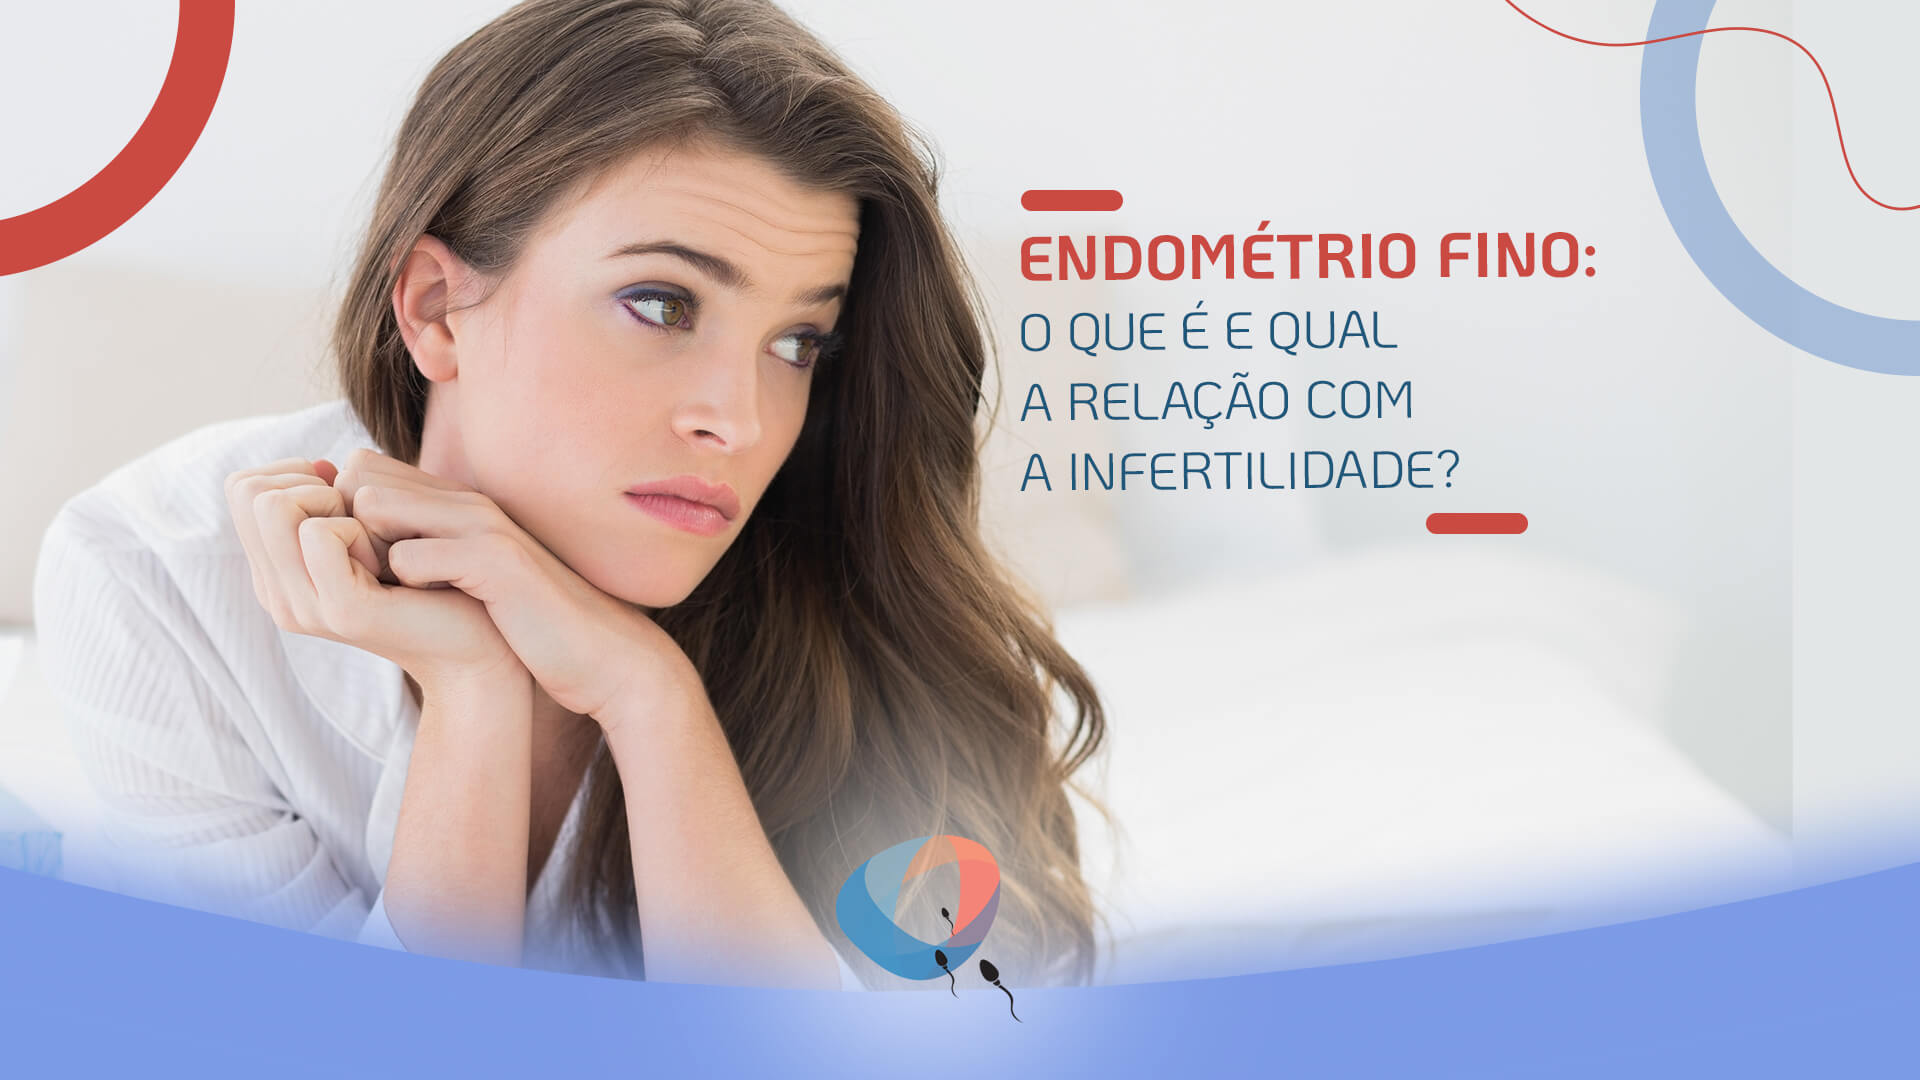 Endométrio fino: o que é e qual a relação com a infertilidade?